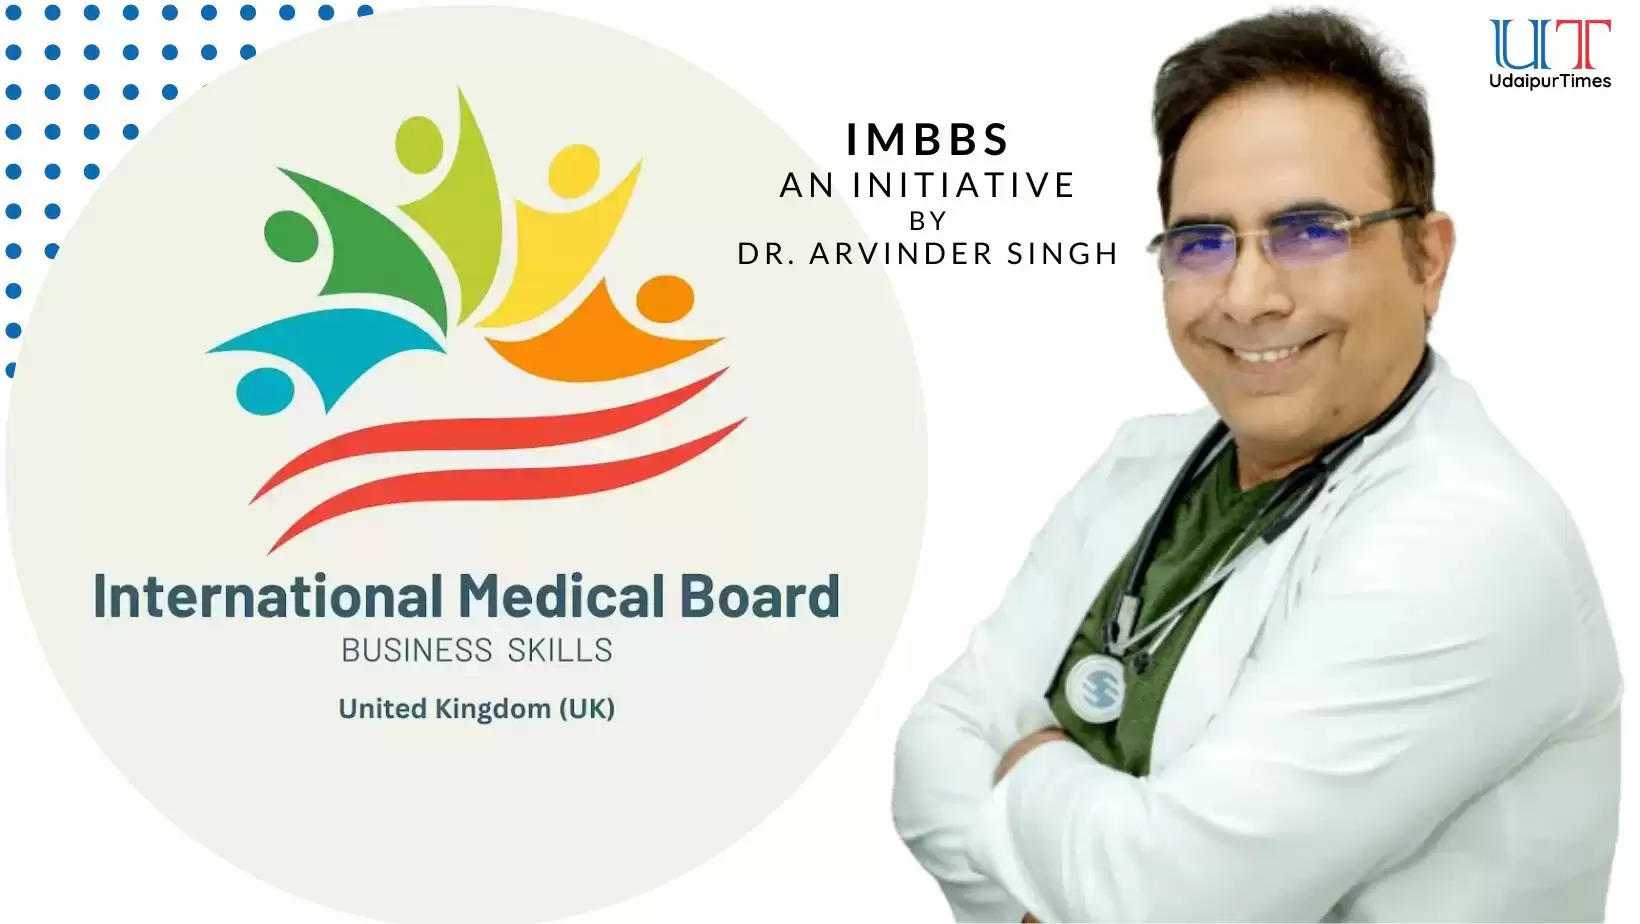 International Medical Board for Business Studies London, Dr Arvinder Singh, Udaipur, Integrating Business Studies for Medical Practioners